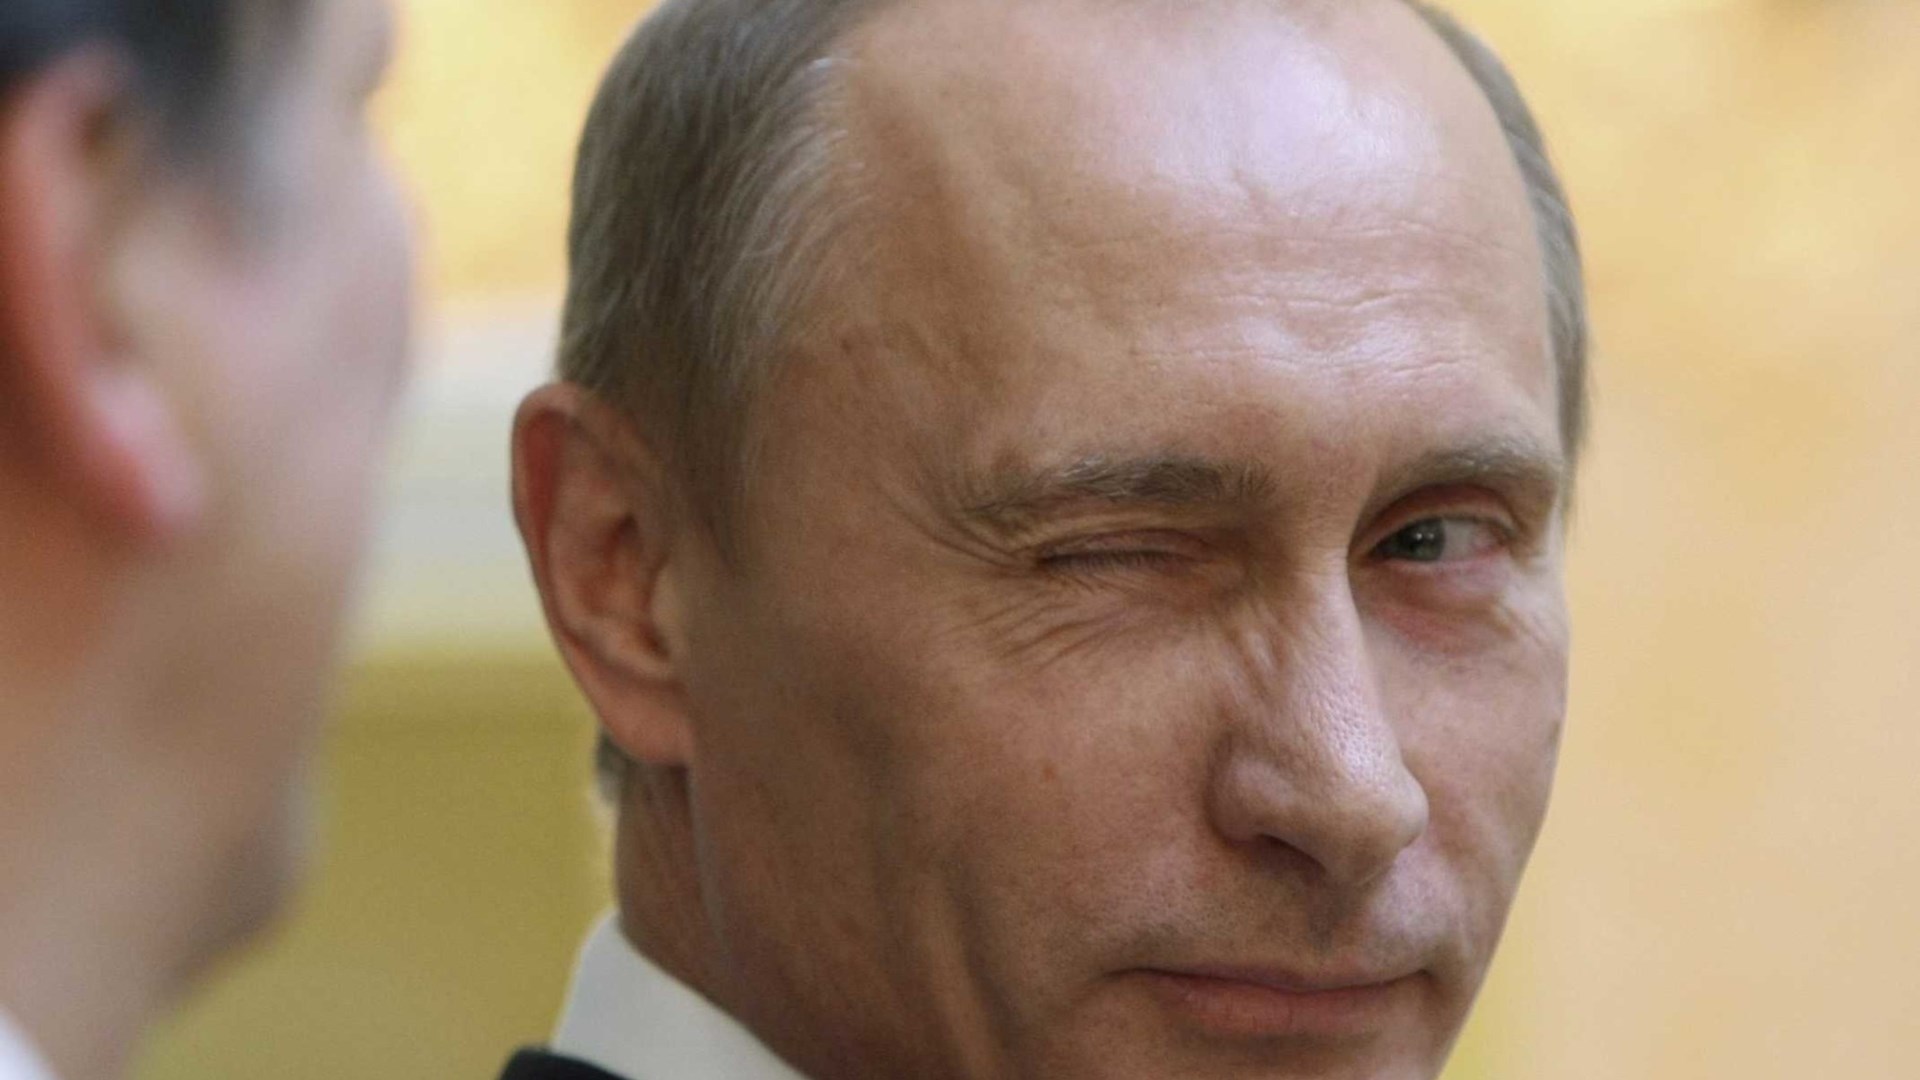 ΗΠΑ: Ο Πούτιν είχε καταρτίσει σχέδιο επιρροής των αμερικανικών εκλογών αναφέρουν εμπιστευτικά έγγραφα